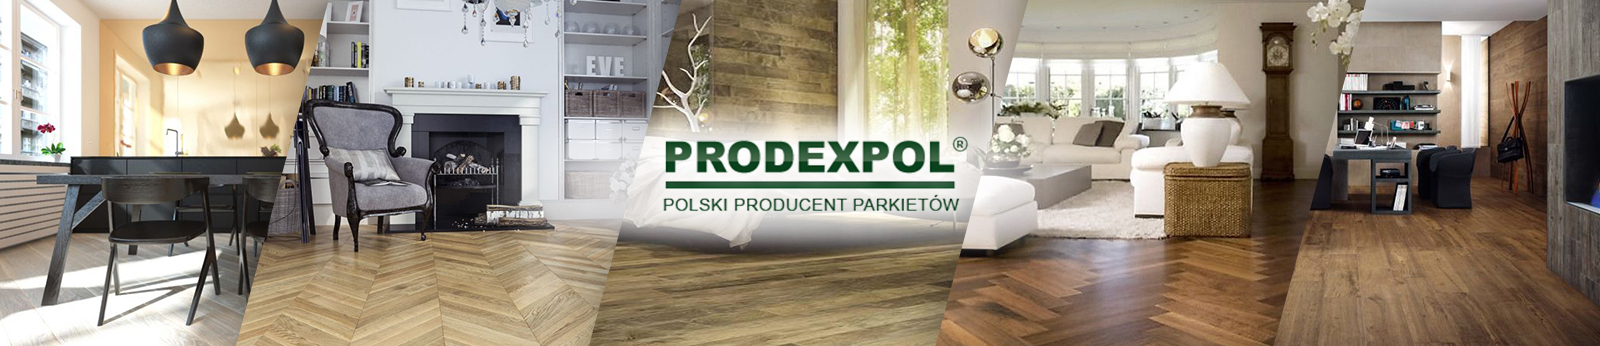 PRODEXPOL.pl